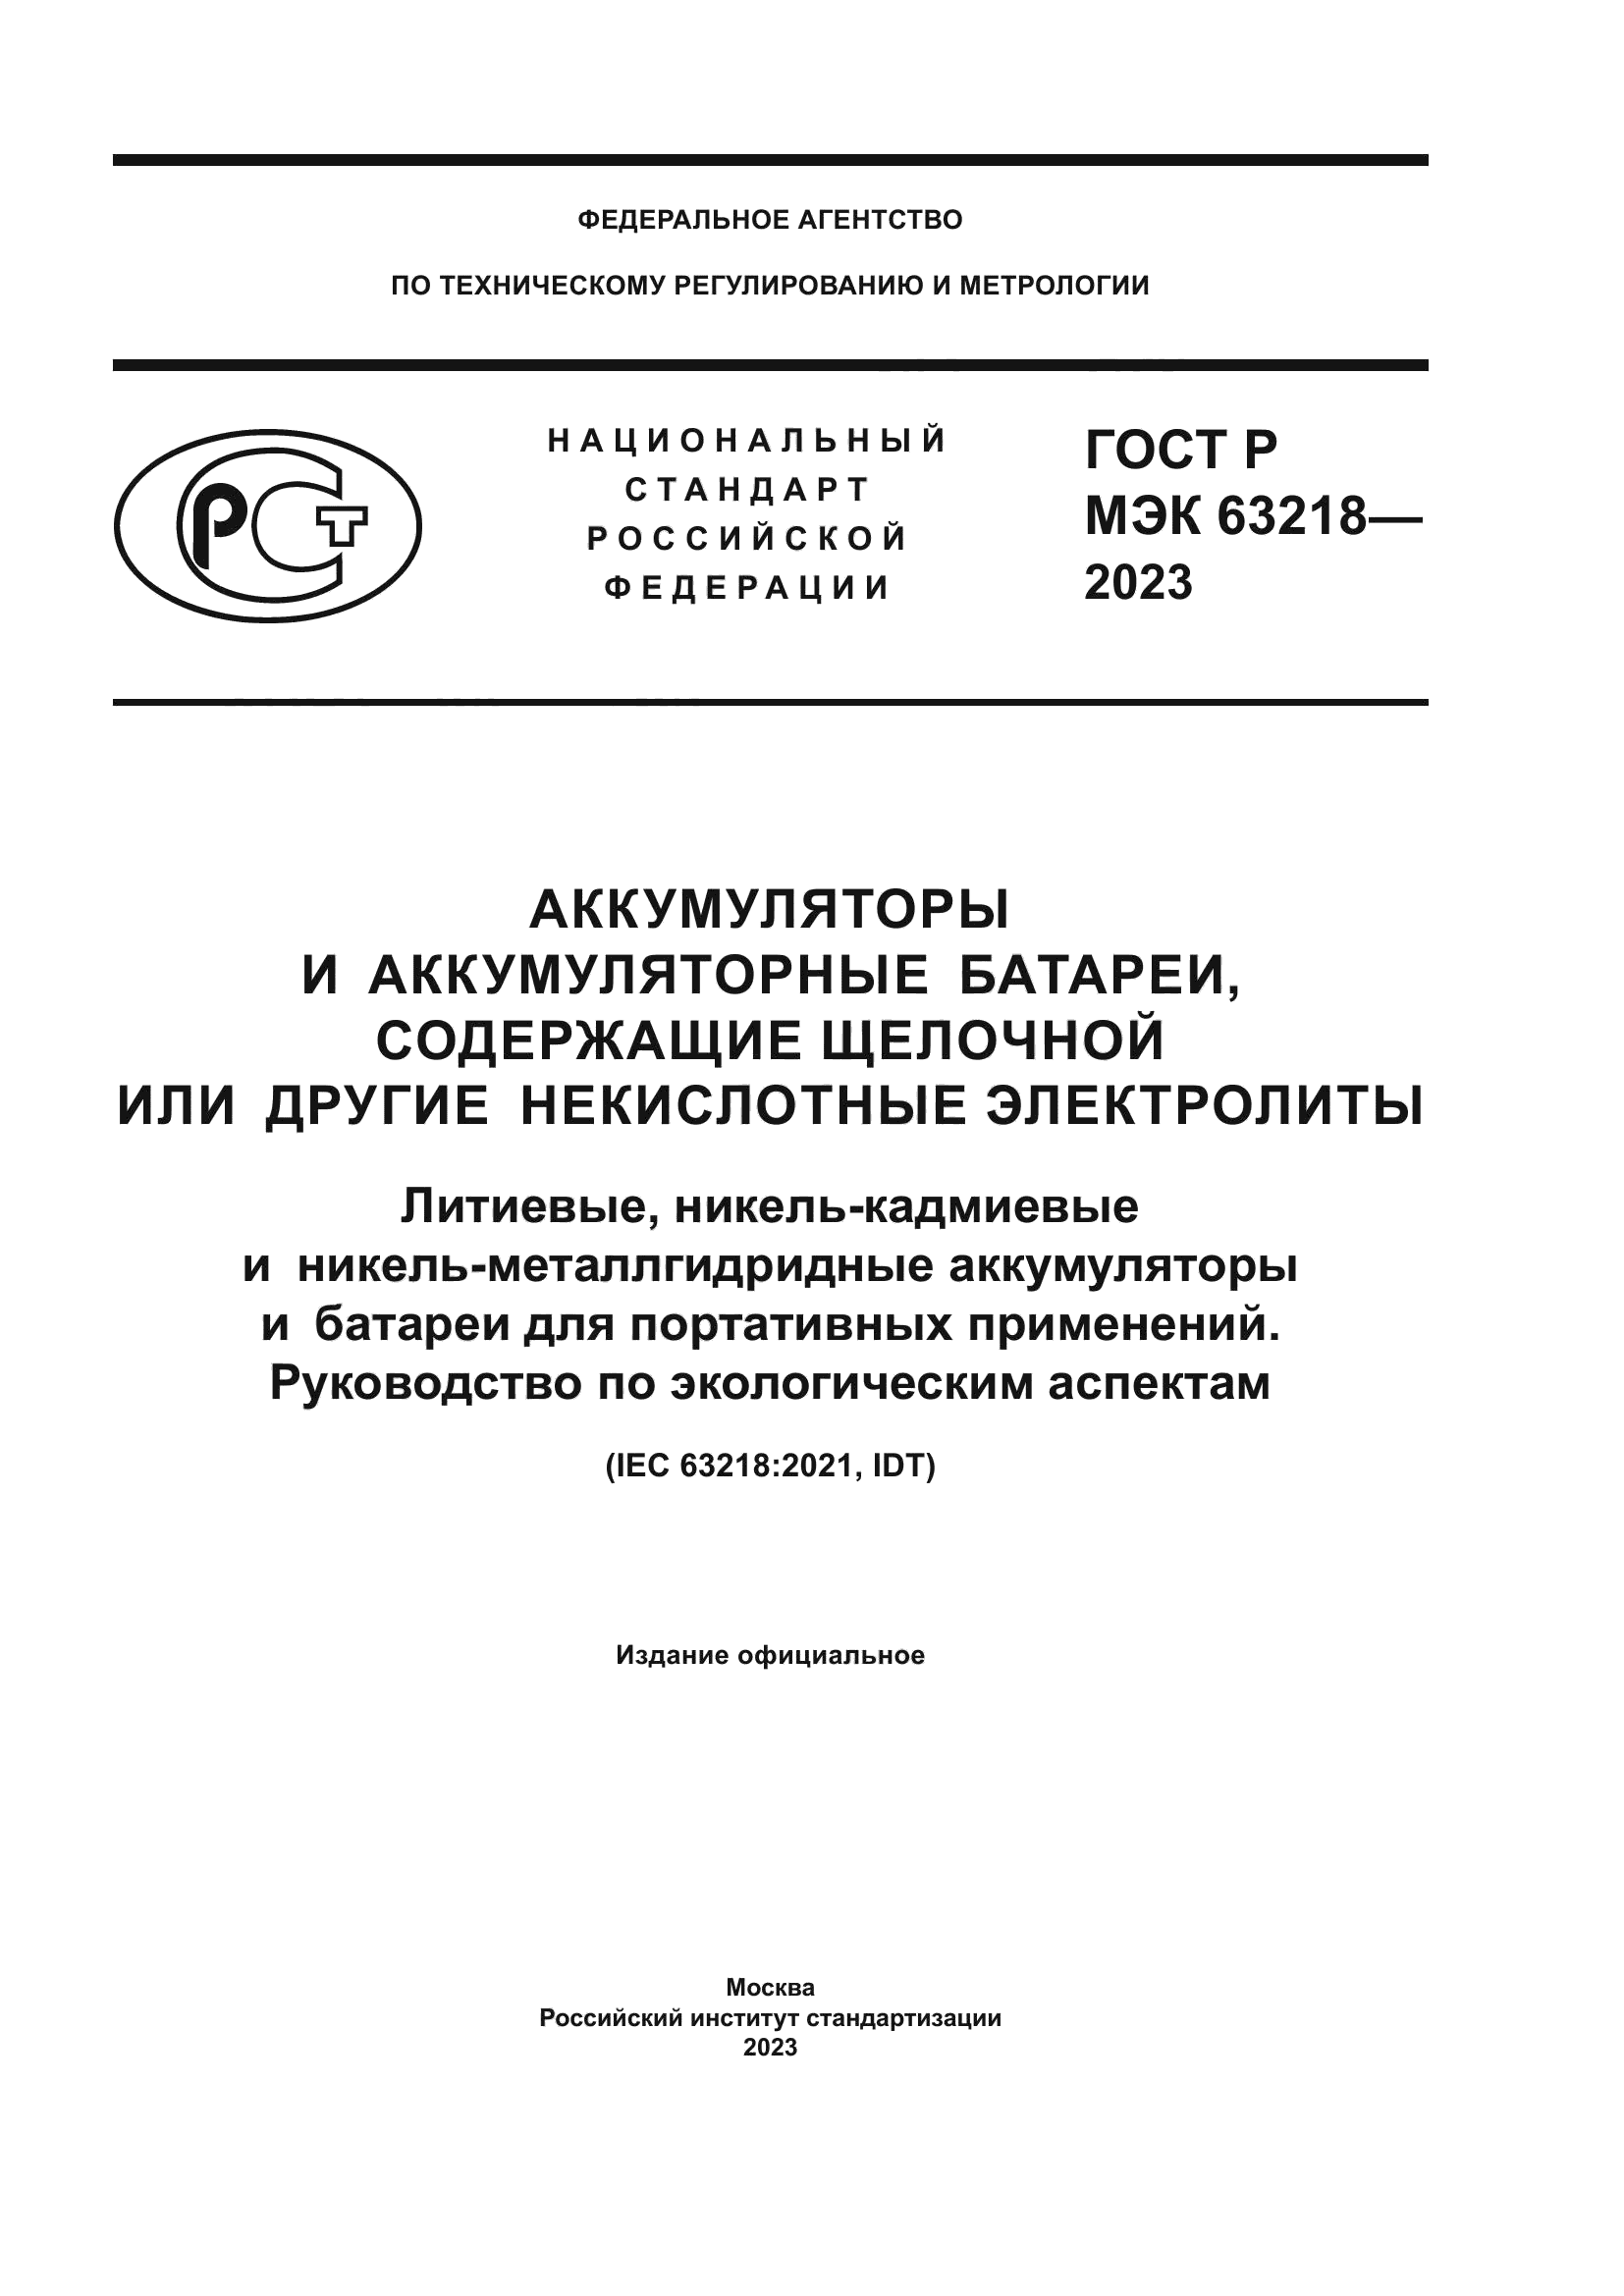 ГОСТ Р МЭК 63218-2023